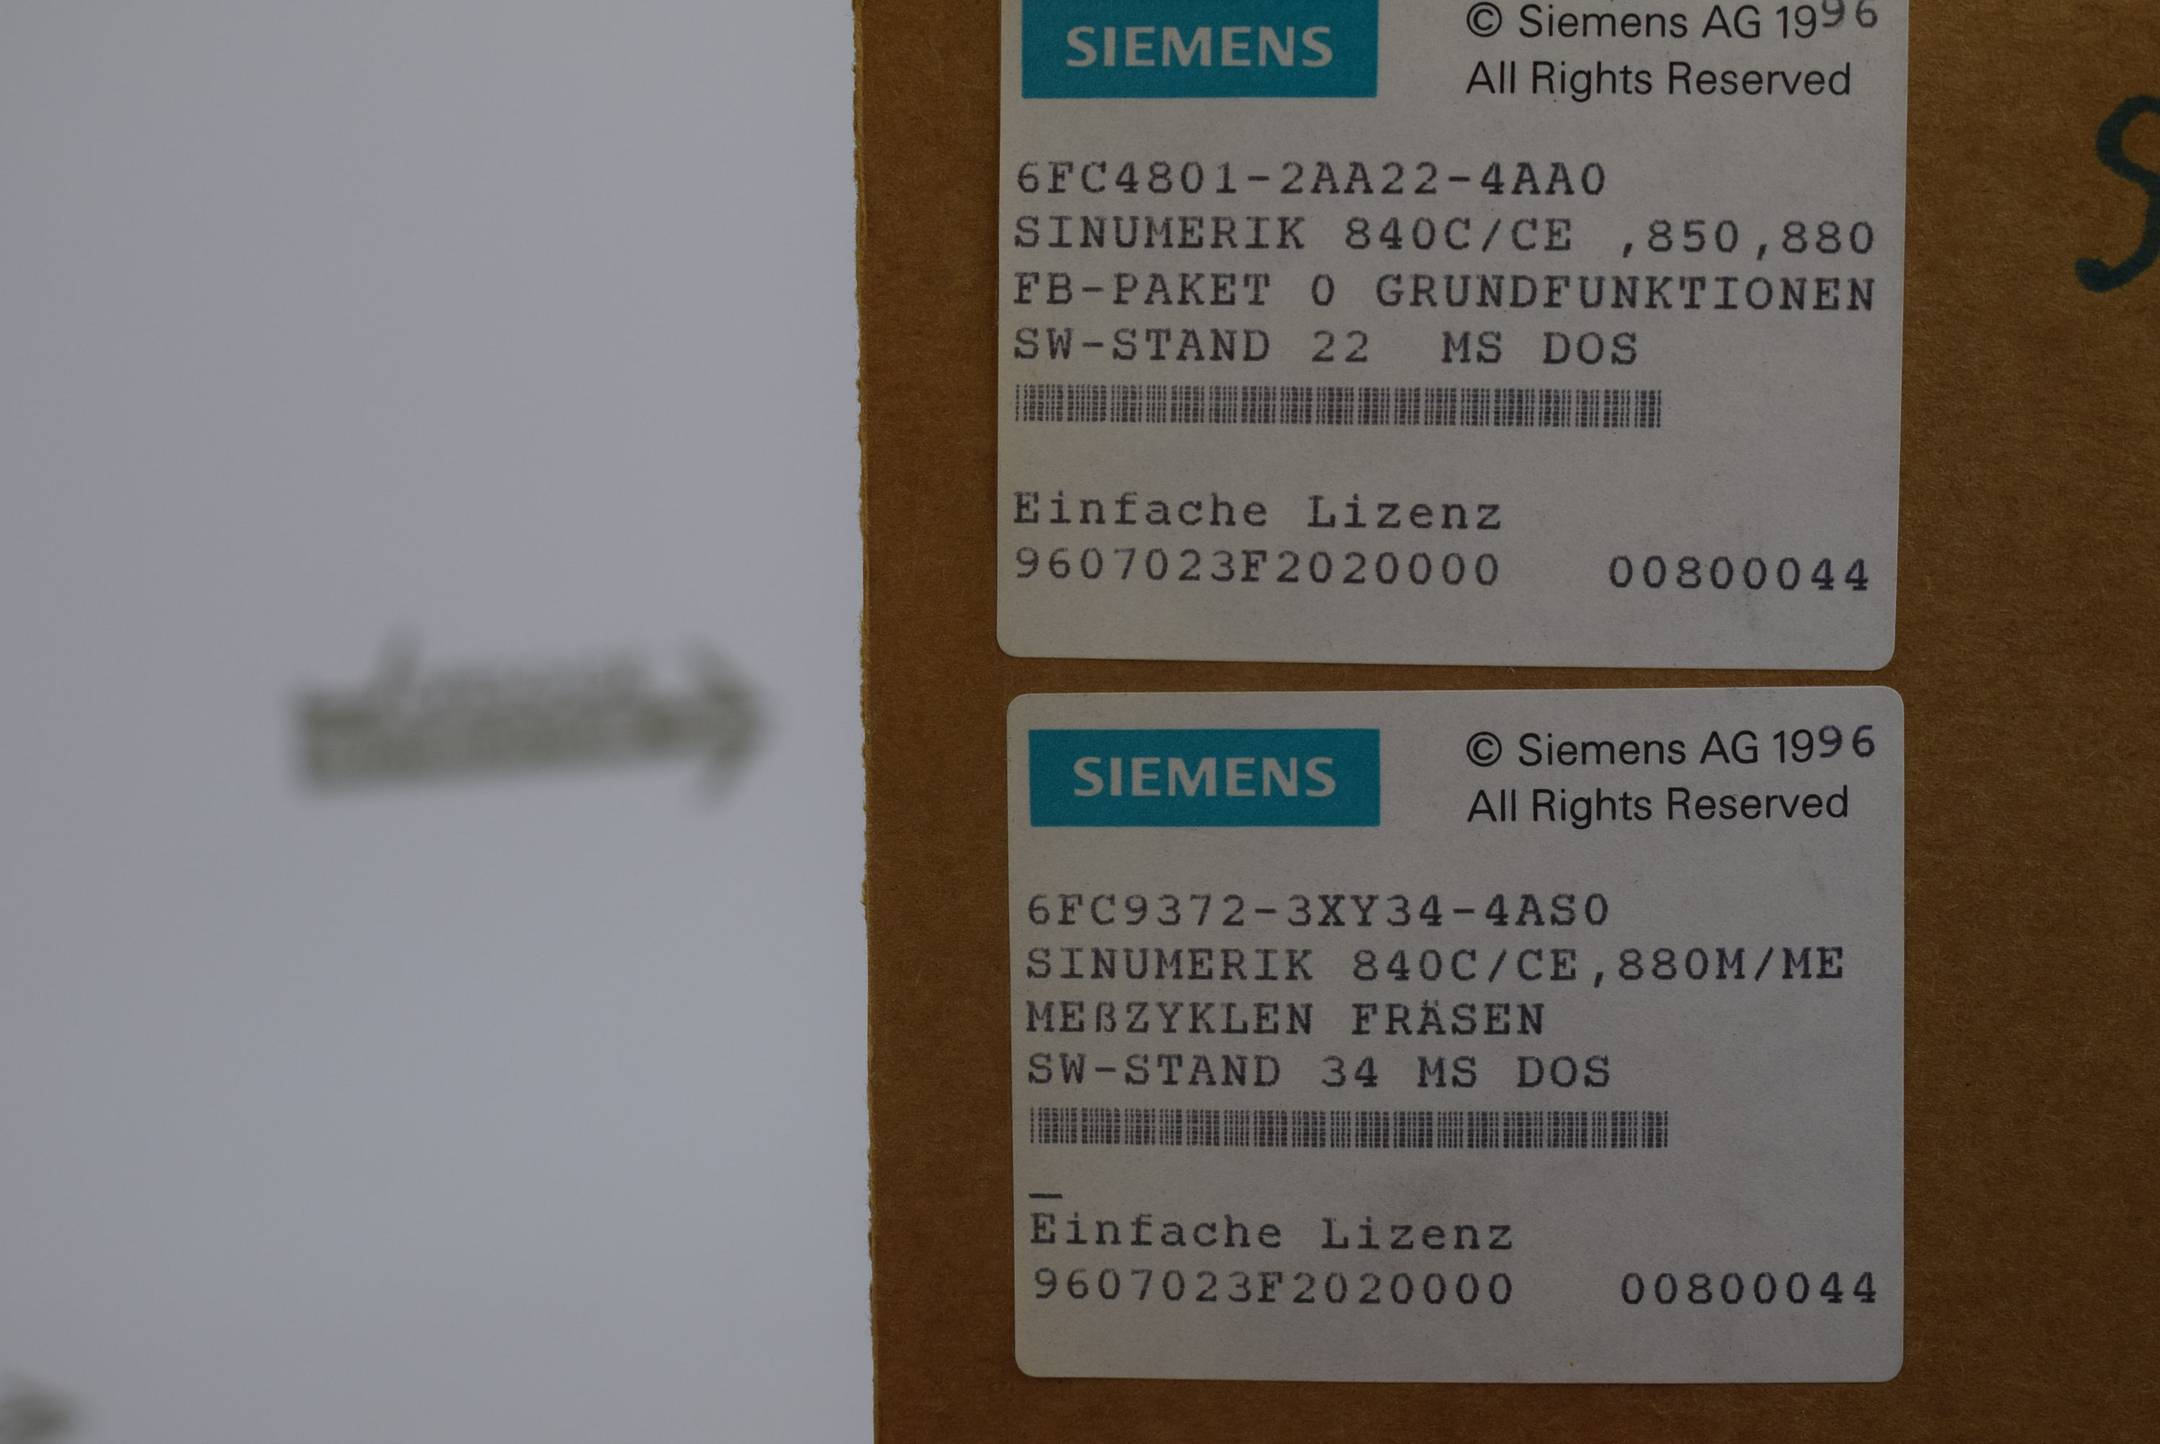 Siemens Einfache Lizenz für SINUMERIK 840C/CE, 850, 880 6FC4801-2AA22-4AA0 ( 6FC9372-3Y34-4AS0  für 840C/CE, 880M/ME )